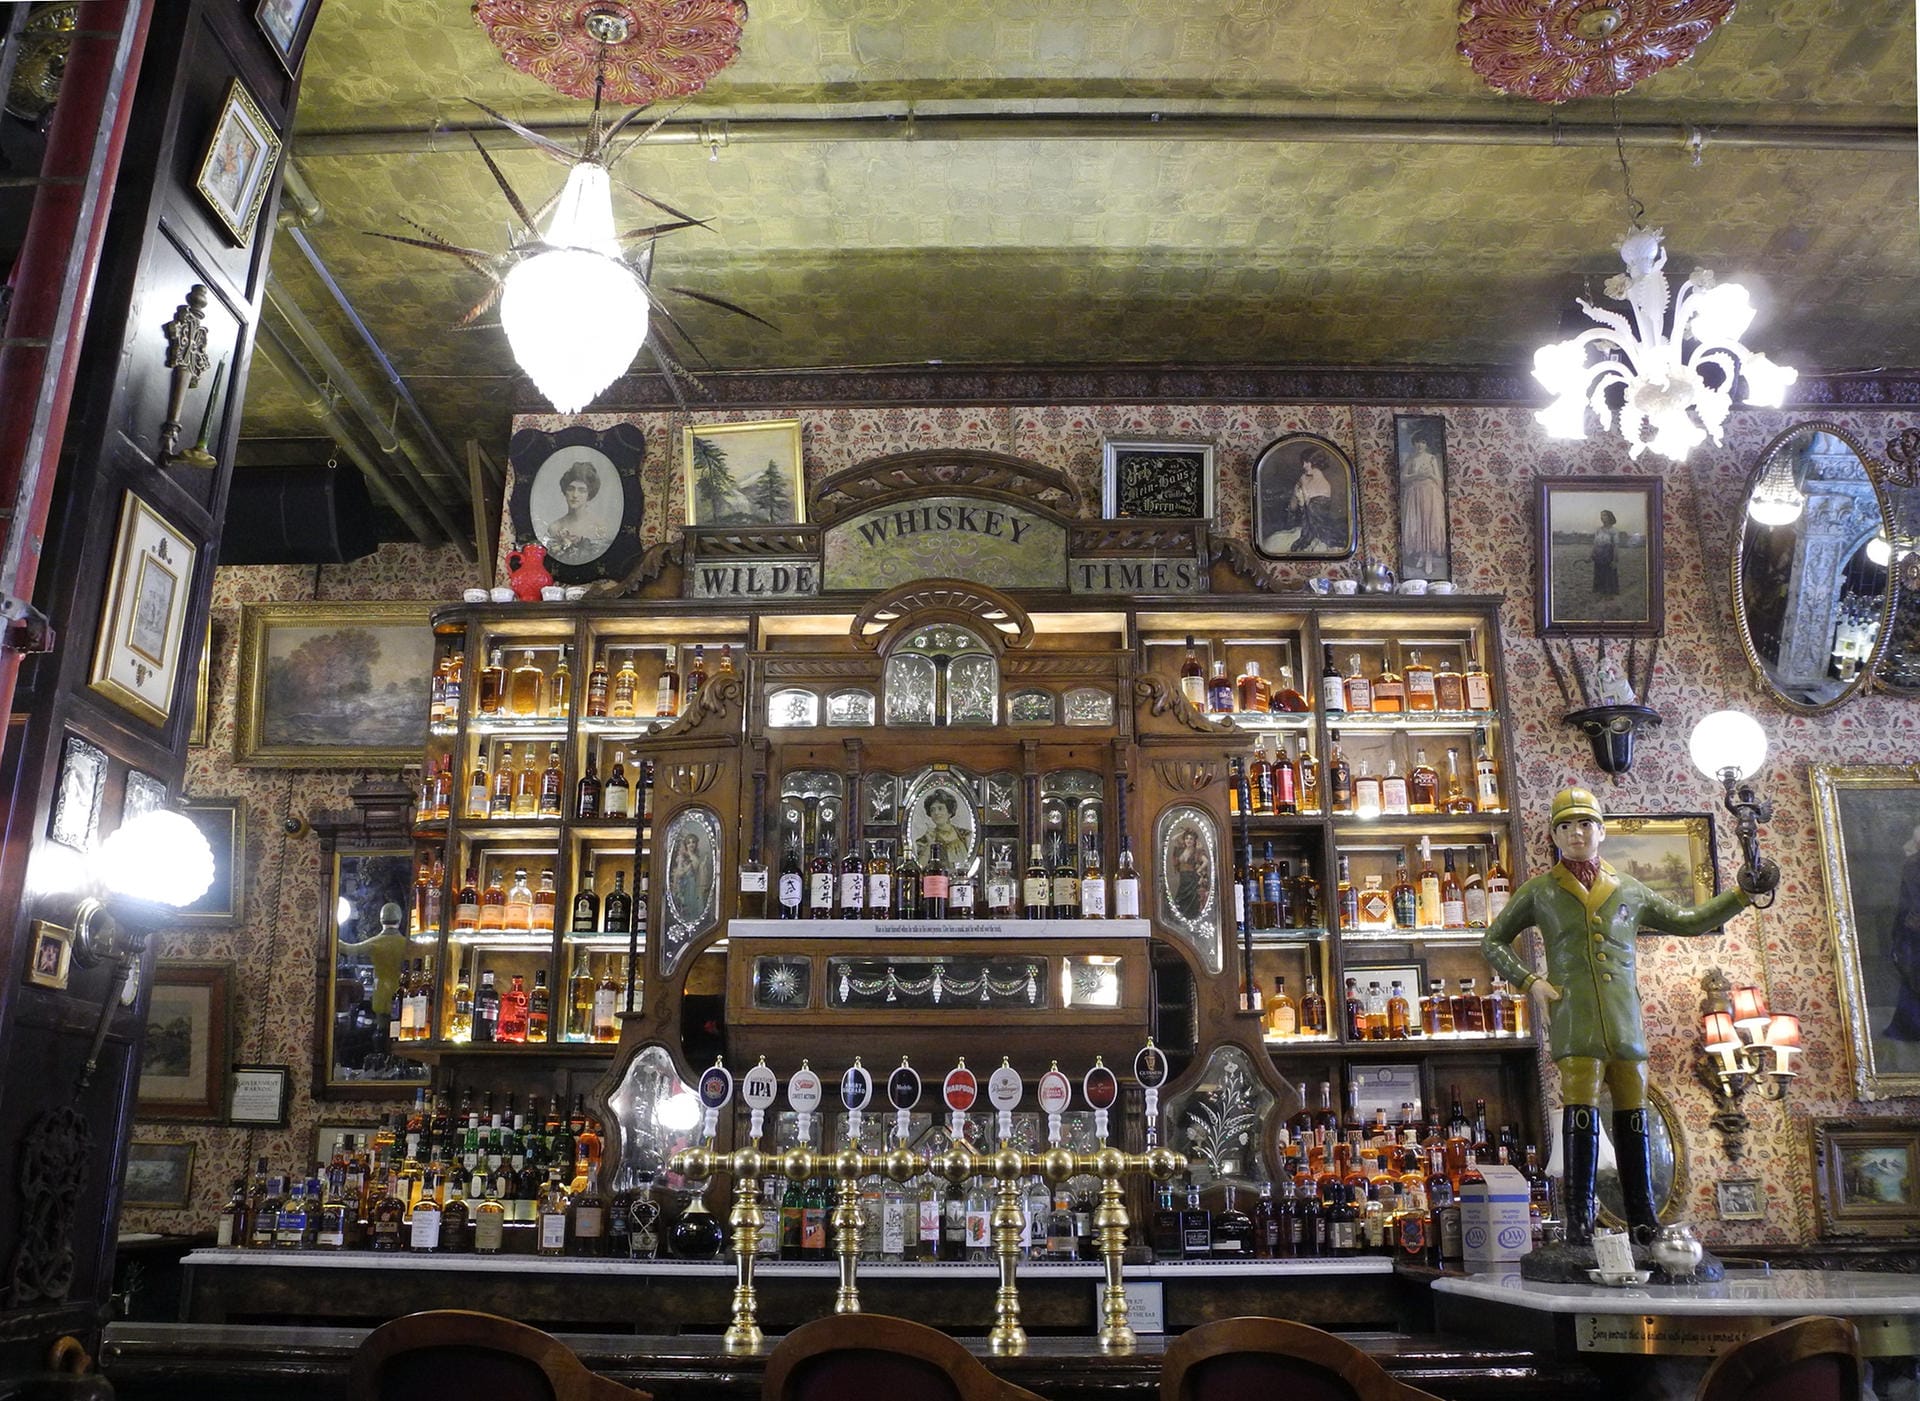 Themen-Bars in New York: Oscar Wilde Fans und Co. trinken in eigentümlichen Ambiente